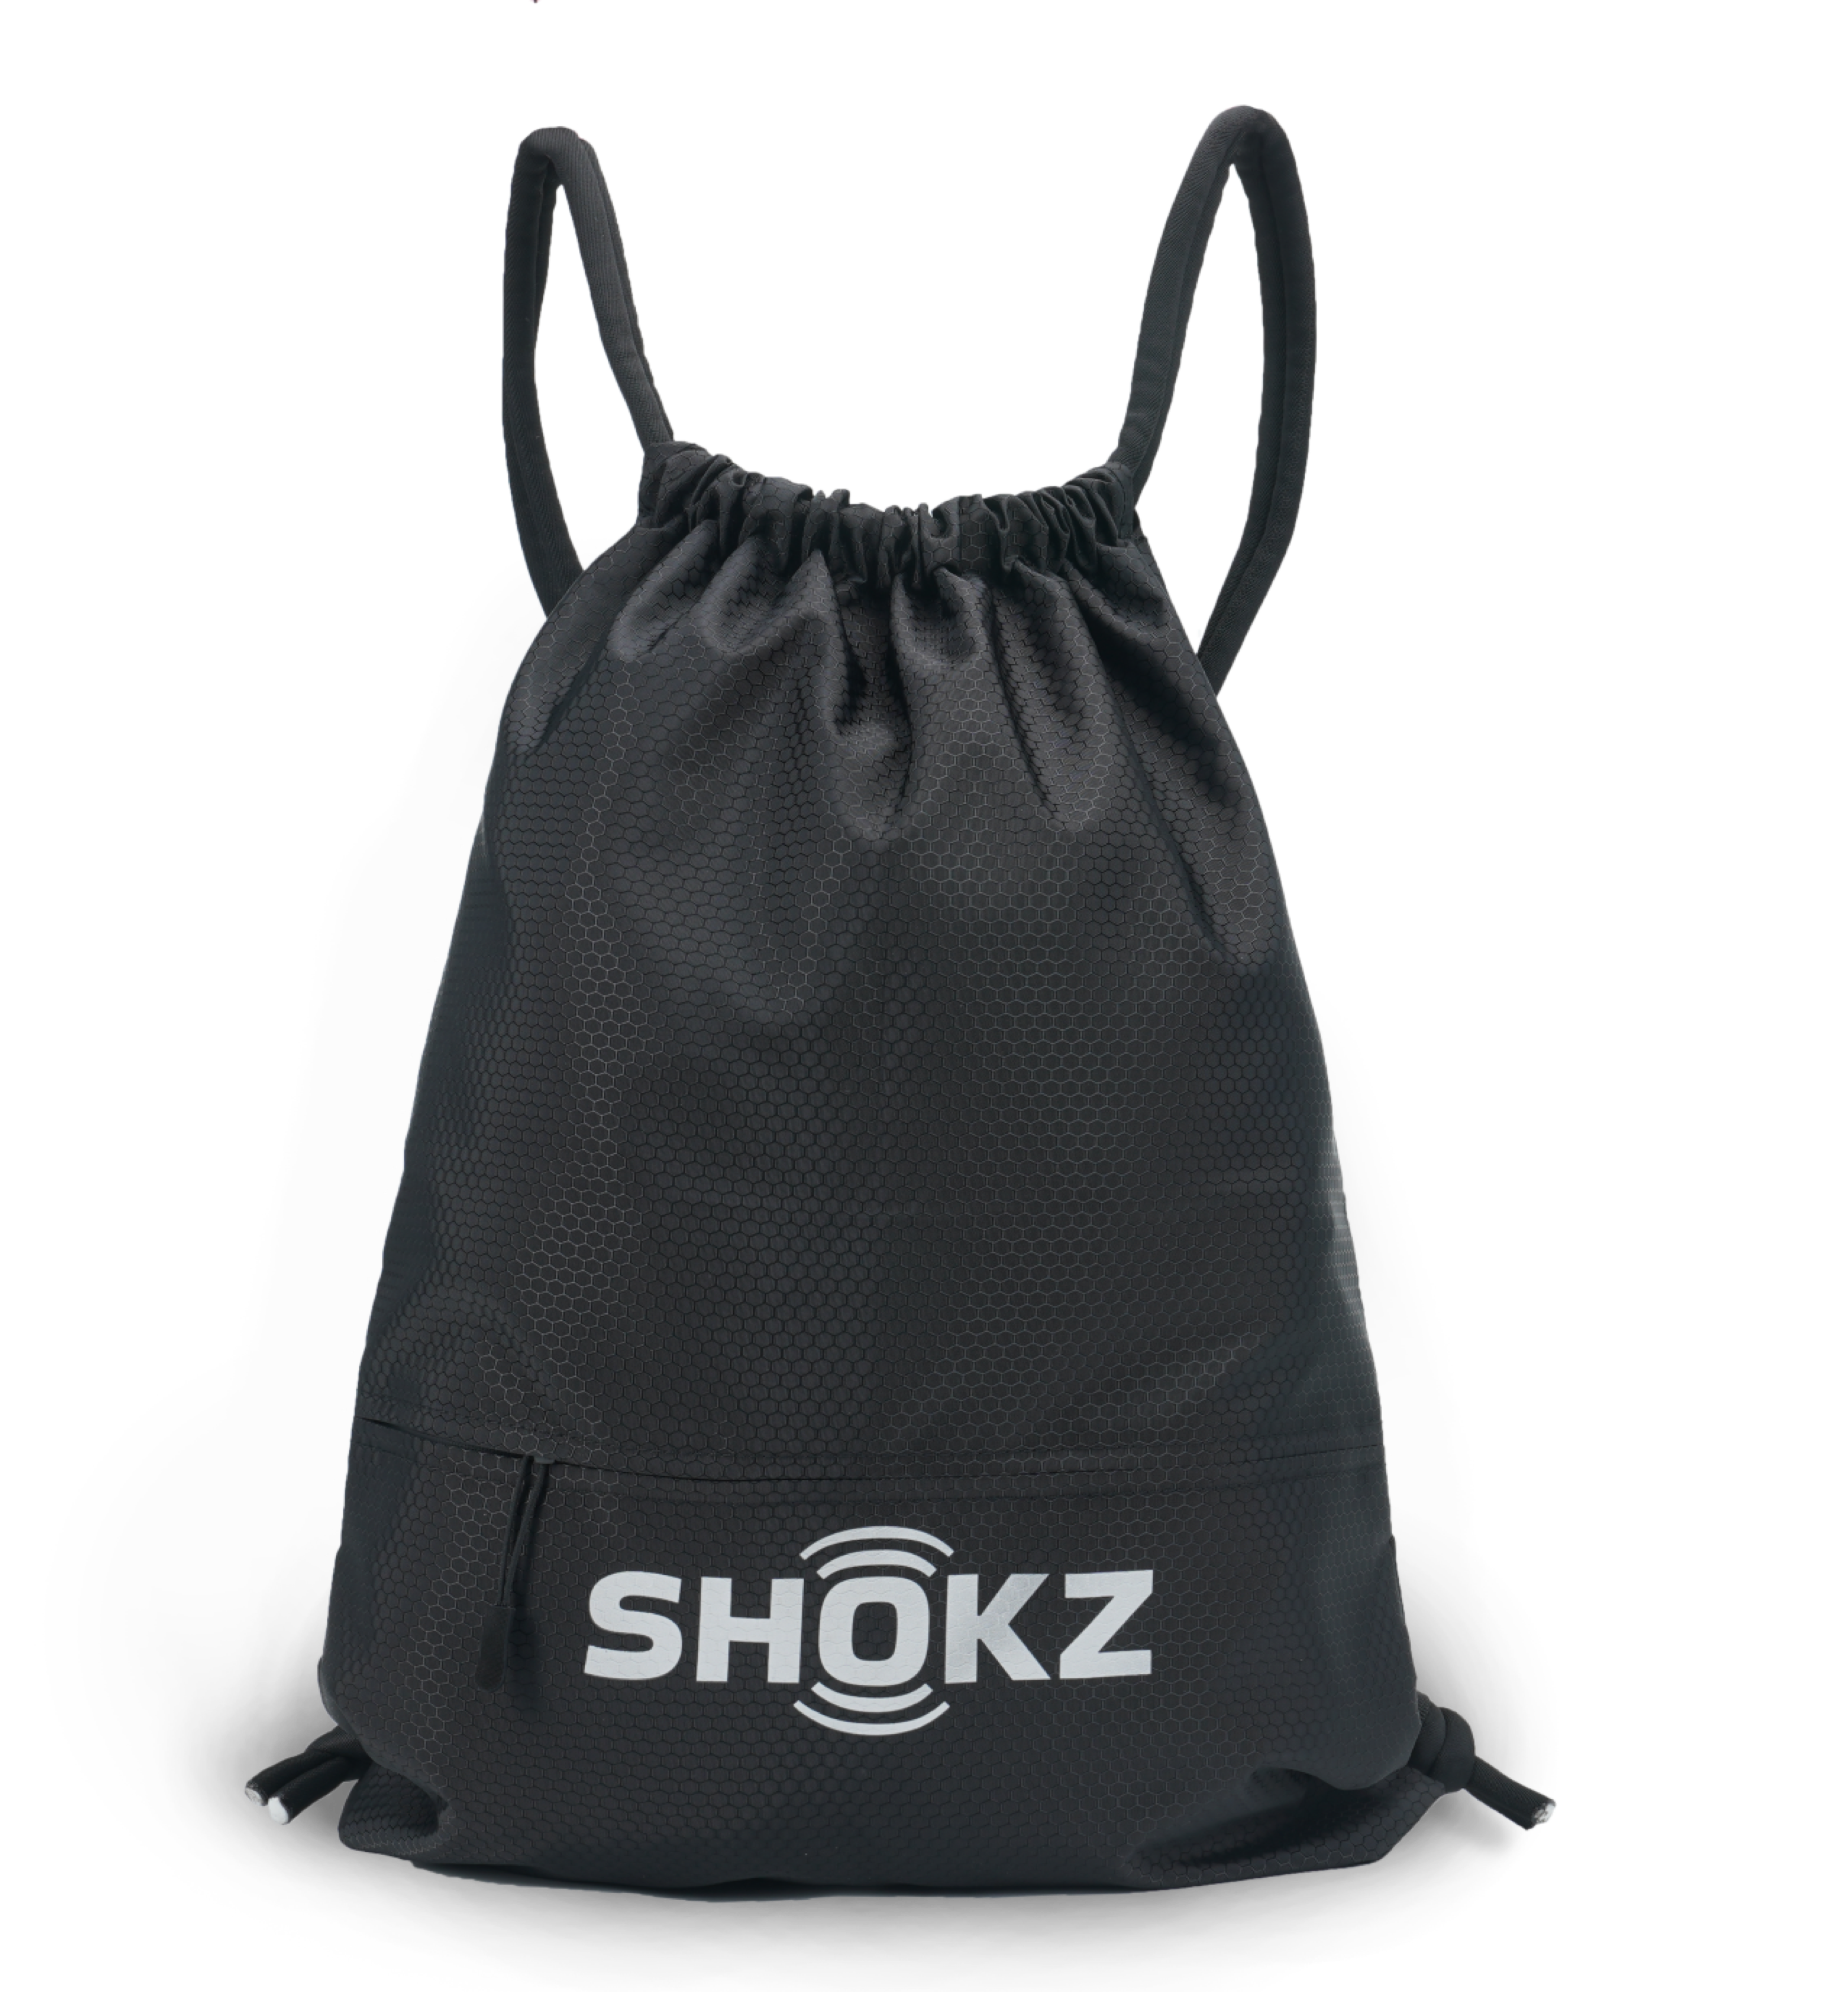 [GIFT] Túi dây rút sợi tổng hợp nhãn hiệu Shokz - Hàng Chính Hãng